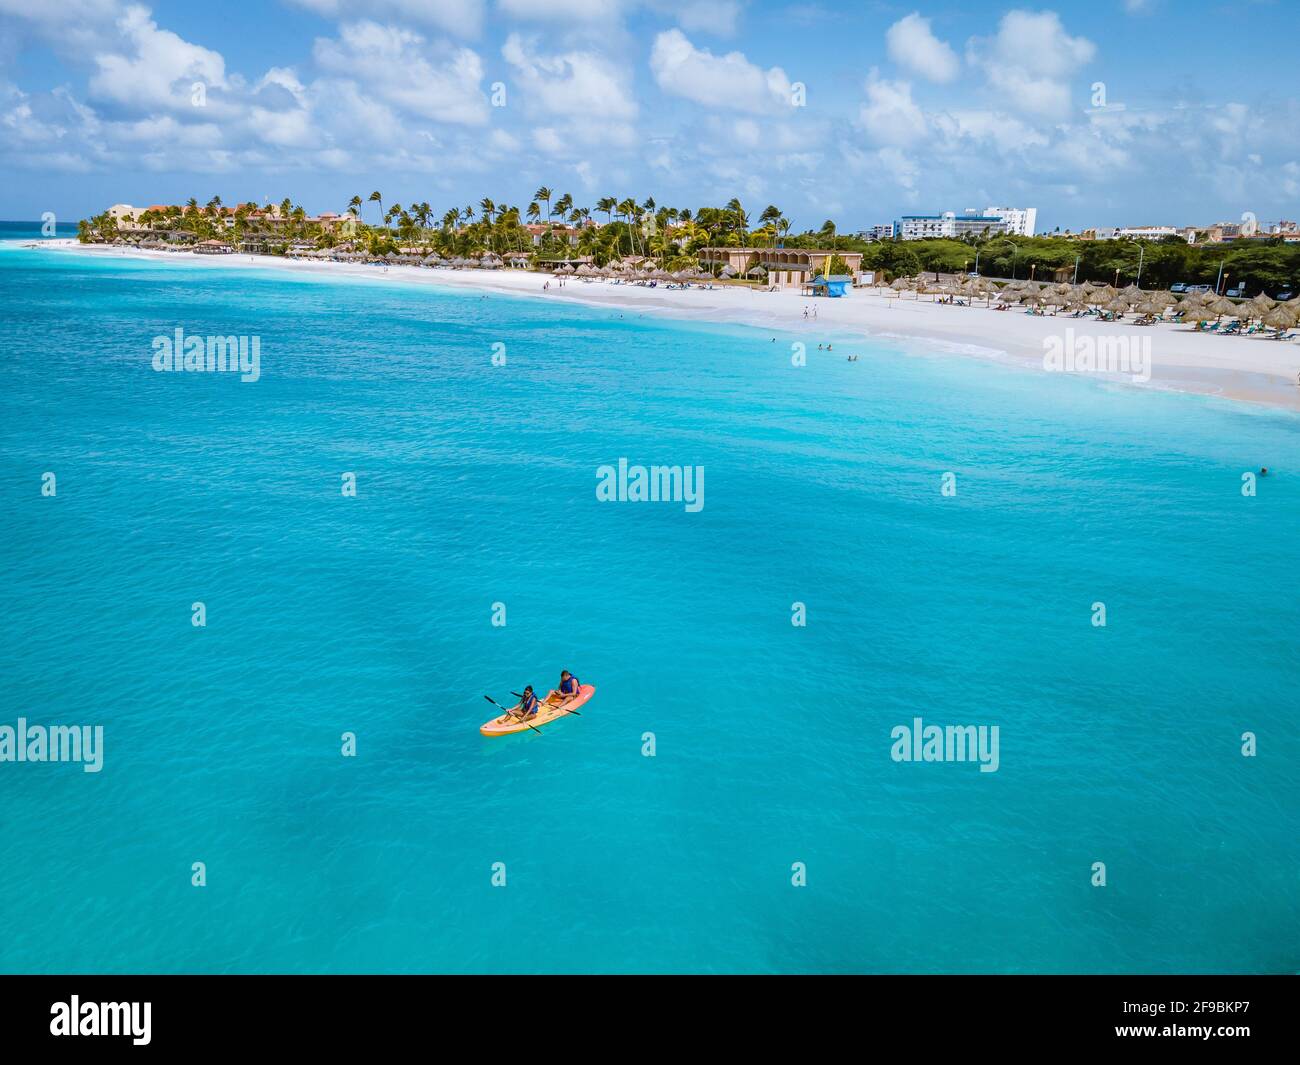 Paar Kajakfahren im Meer auf Urlaub Aruba Karibisches Meer, Mann und Frau mittleren Alters Kajak im Ozean blauen Clrea Wasser weißen Strand und Palmen Aruba Stockfoto